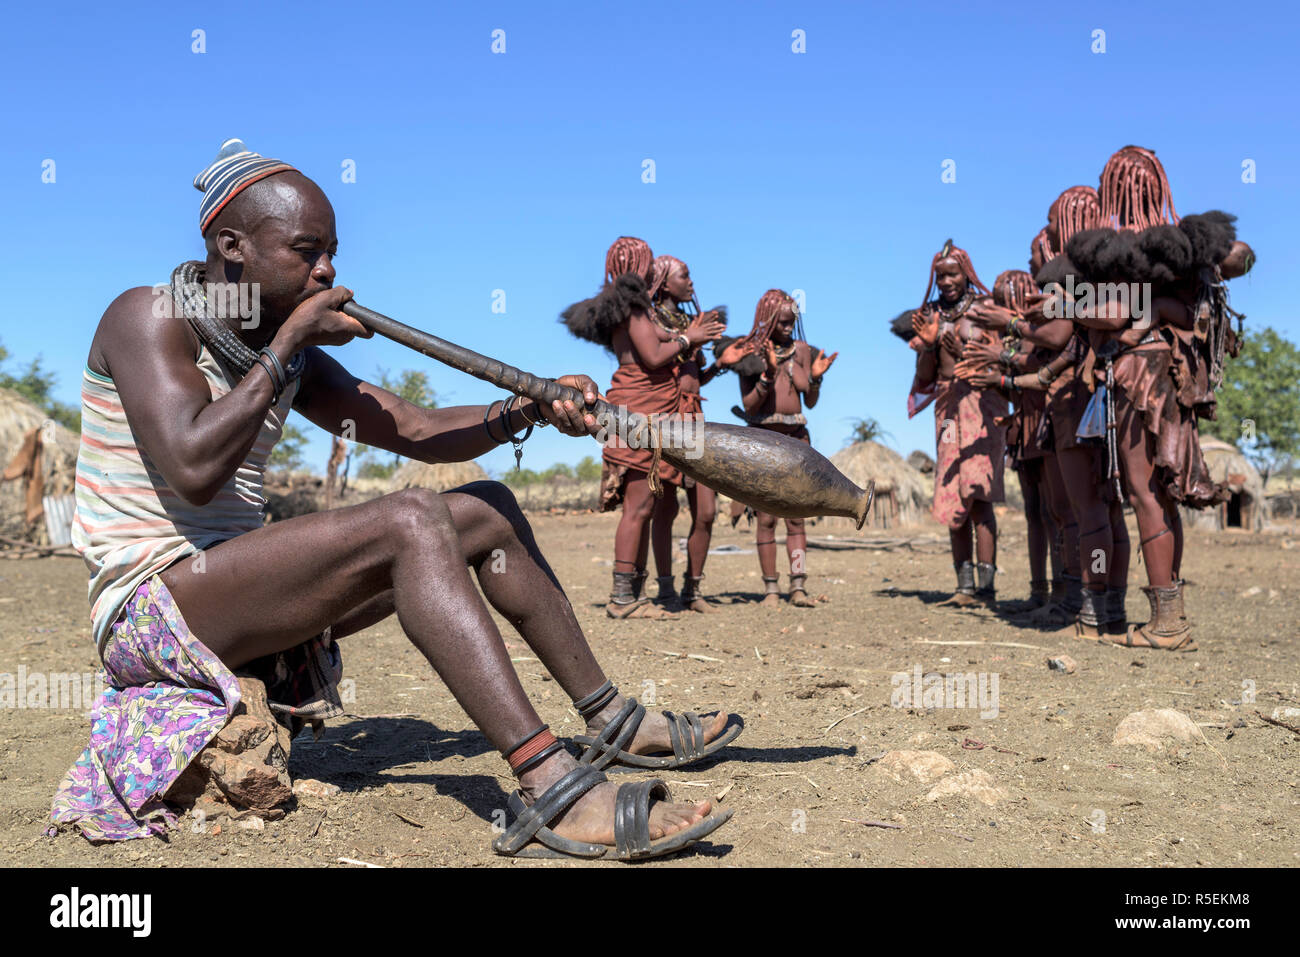 Groupe des femmes Himba avec costumes traditionnels de danser dans un cercle alors qu'un homme joue un violon fabriqué à partir d'une corne orix. Banque D'Images